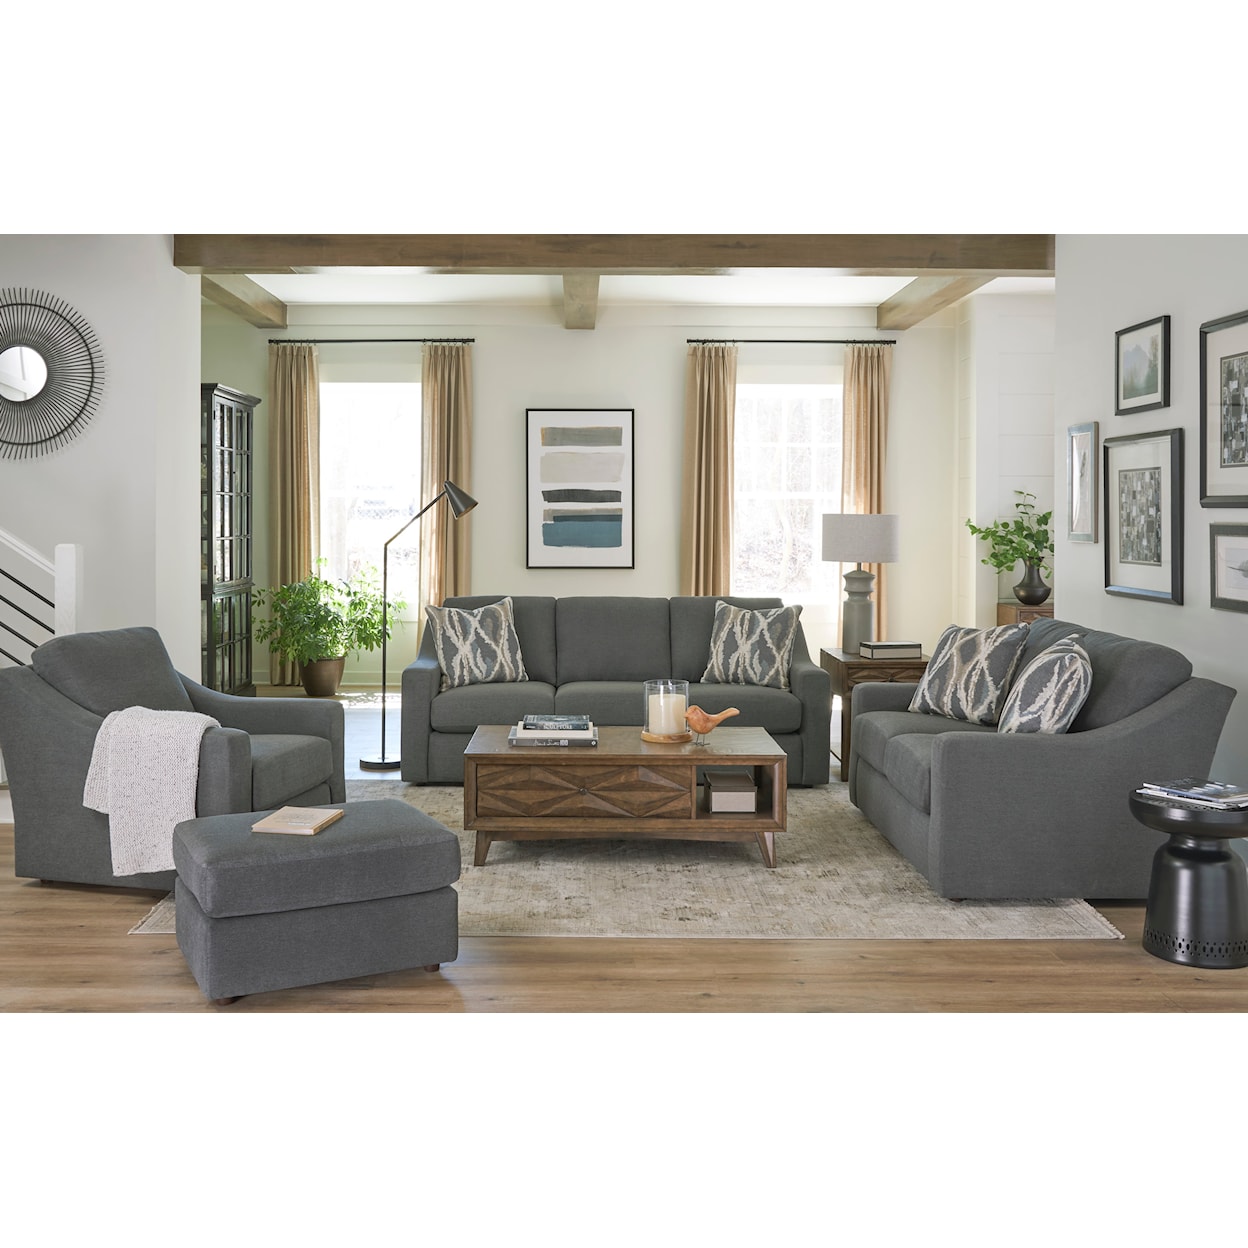 Bravo Furniture Caverra Living Room Set